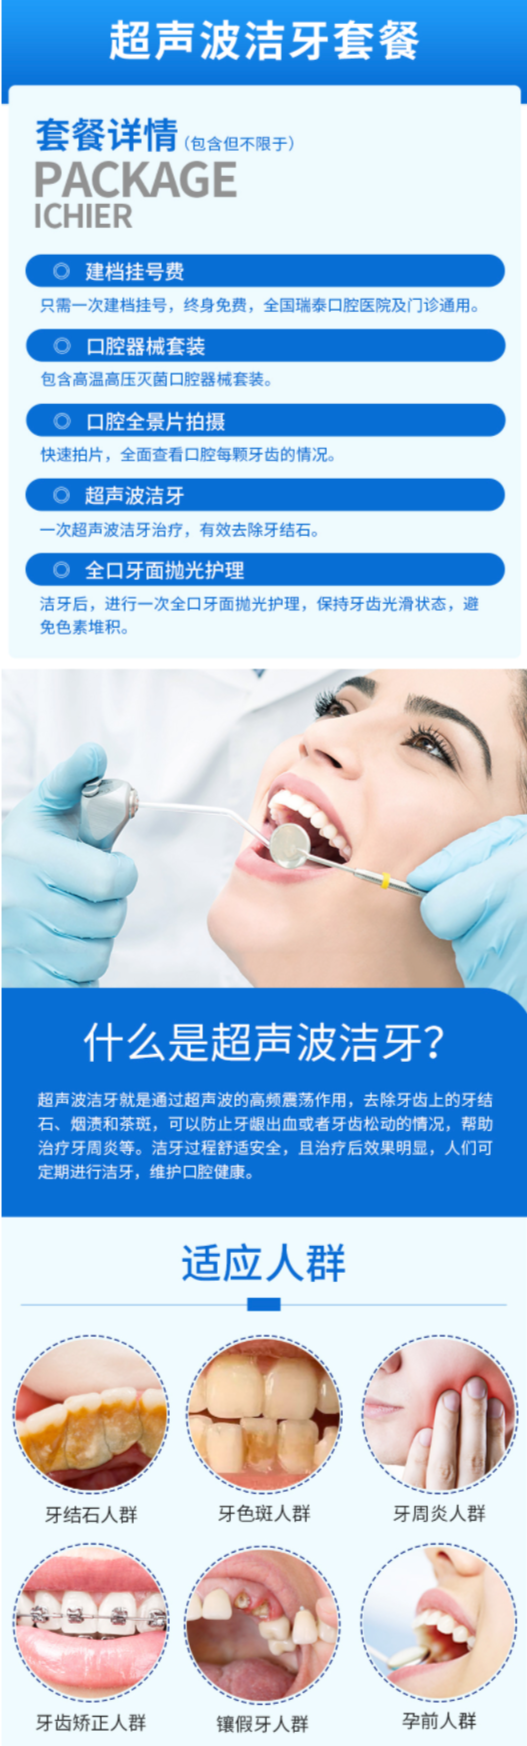 超声波洁牙是一种口腔保健行为,超声波洁牙能洗去牙齿表面的牙结石等